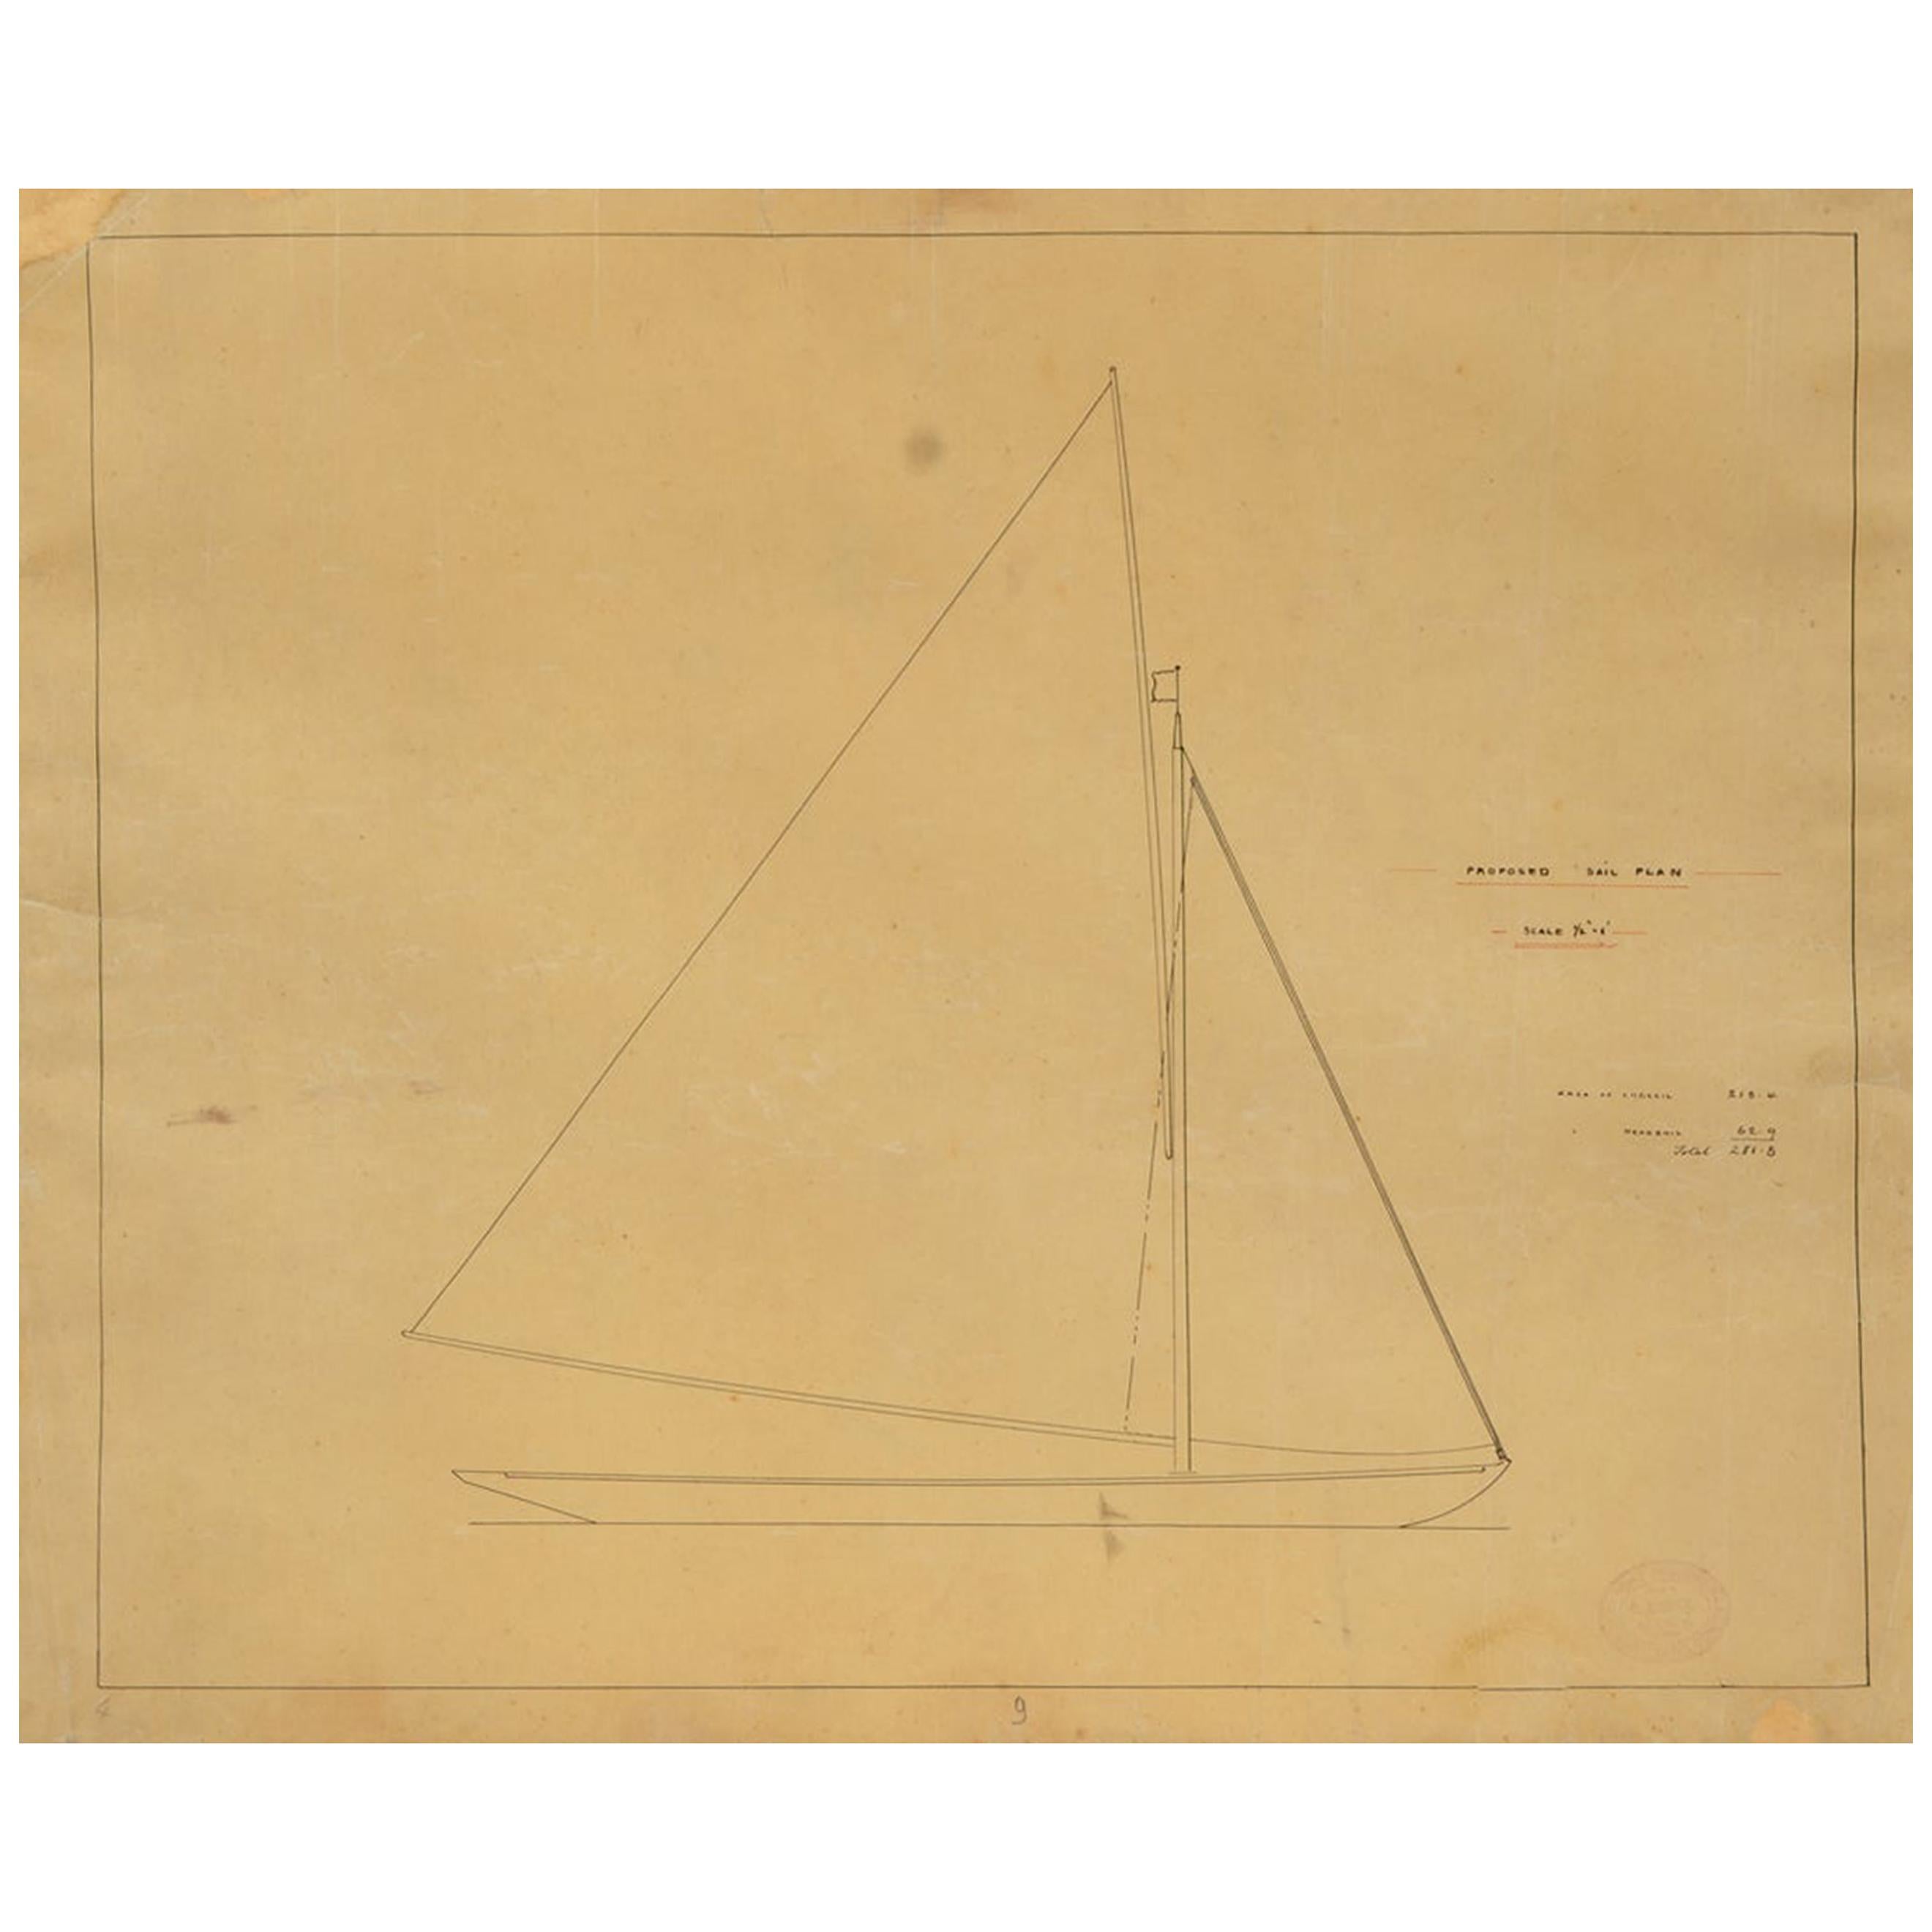 Projet nautique de la fin du 19e siècle par Charles Sibbick des Archives de Charles Fox